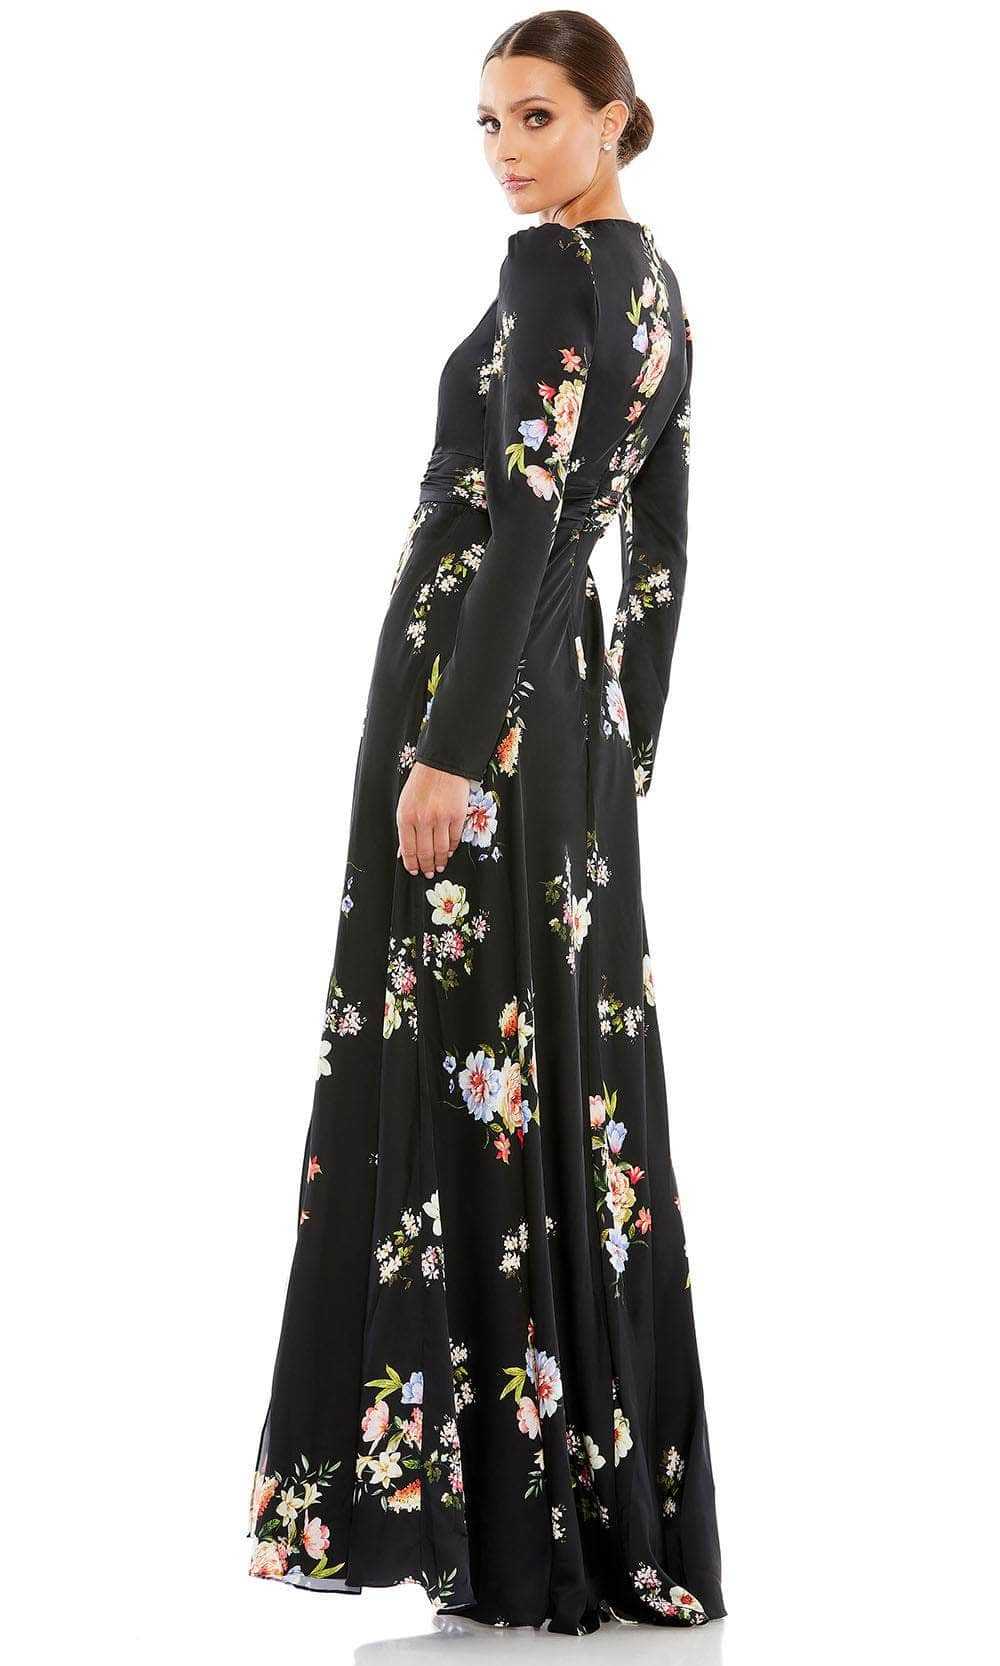 Ieena Duggal, Ieena Duggal 55622 - Floral Printed Long Sleeve Prom Dress